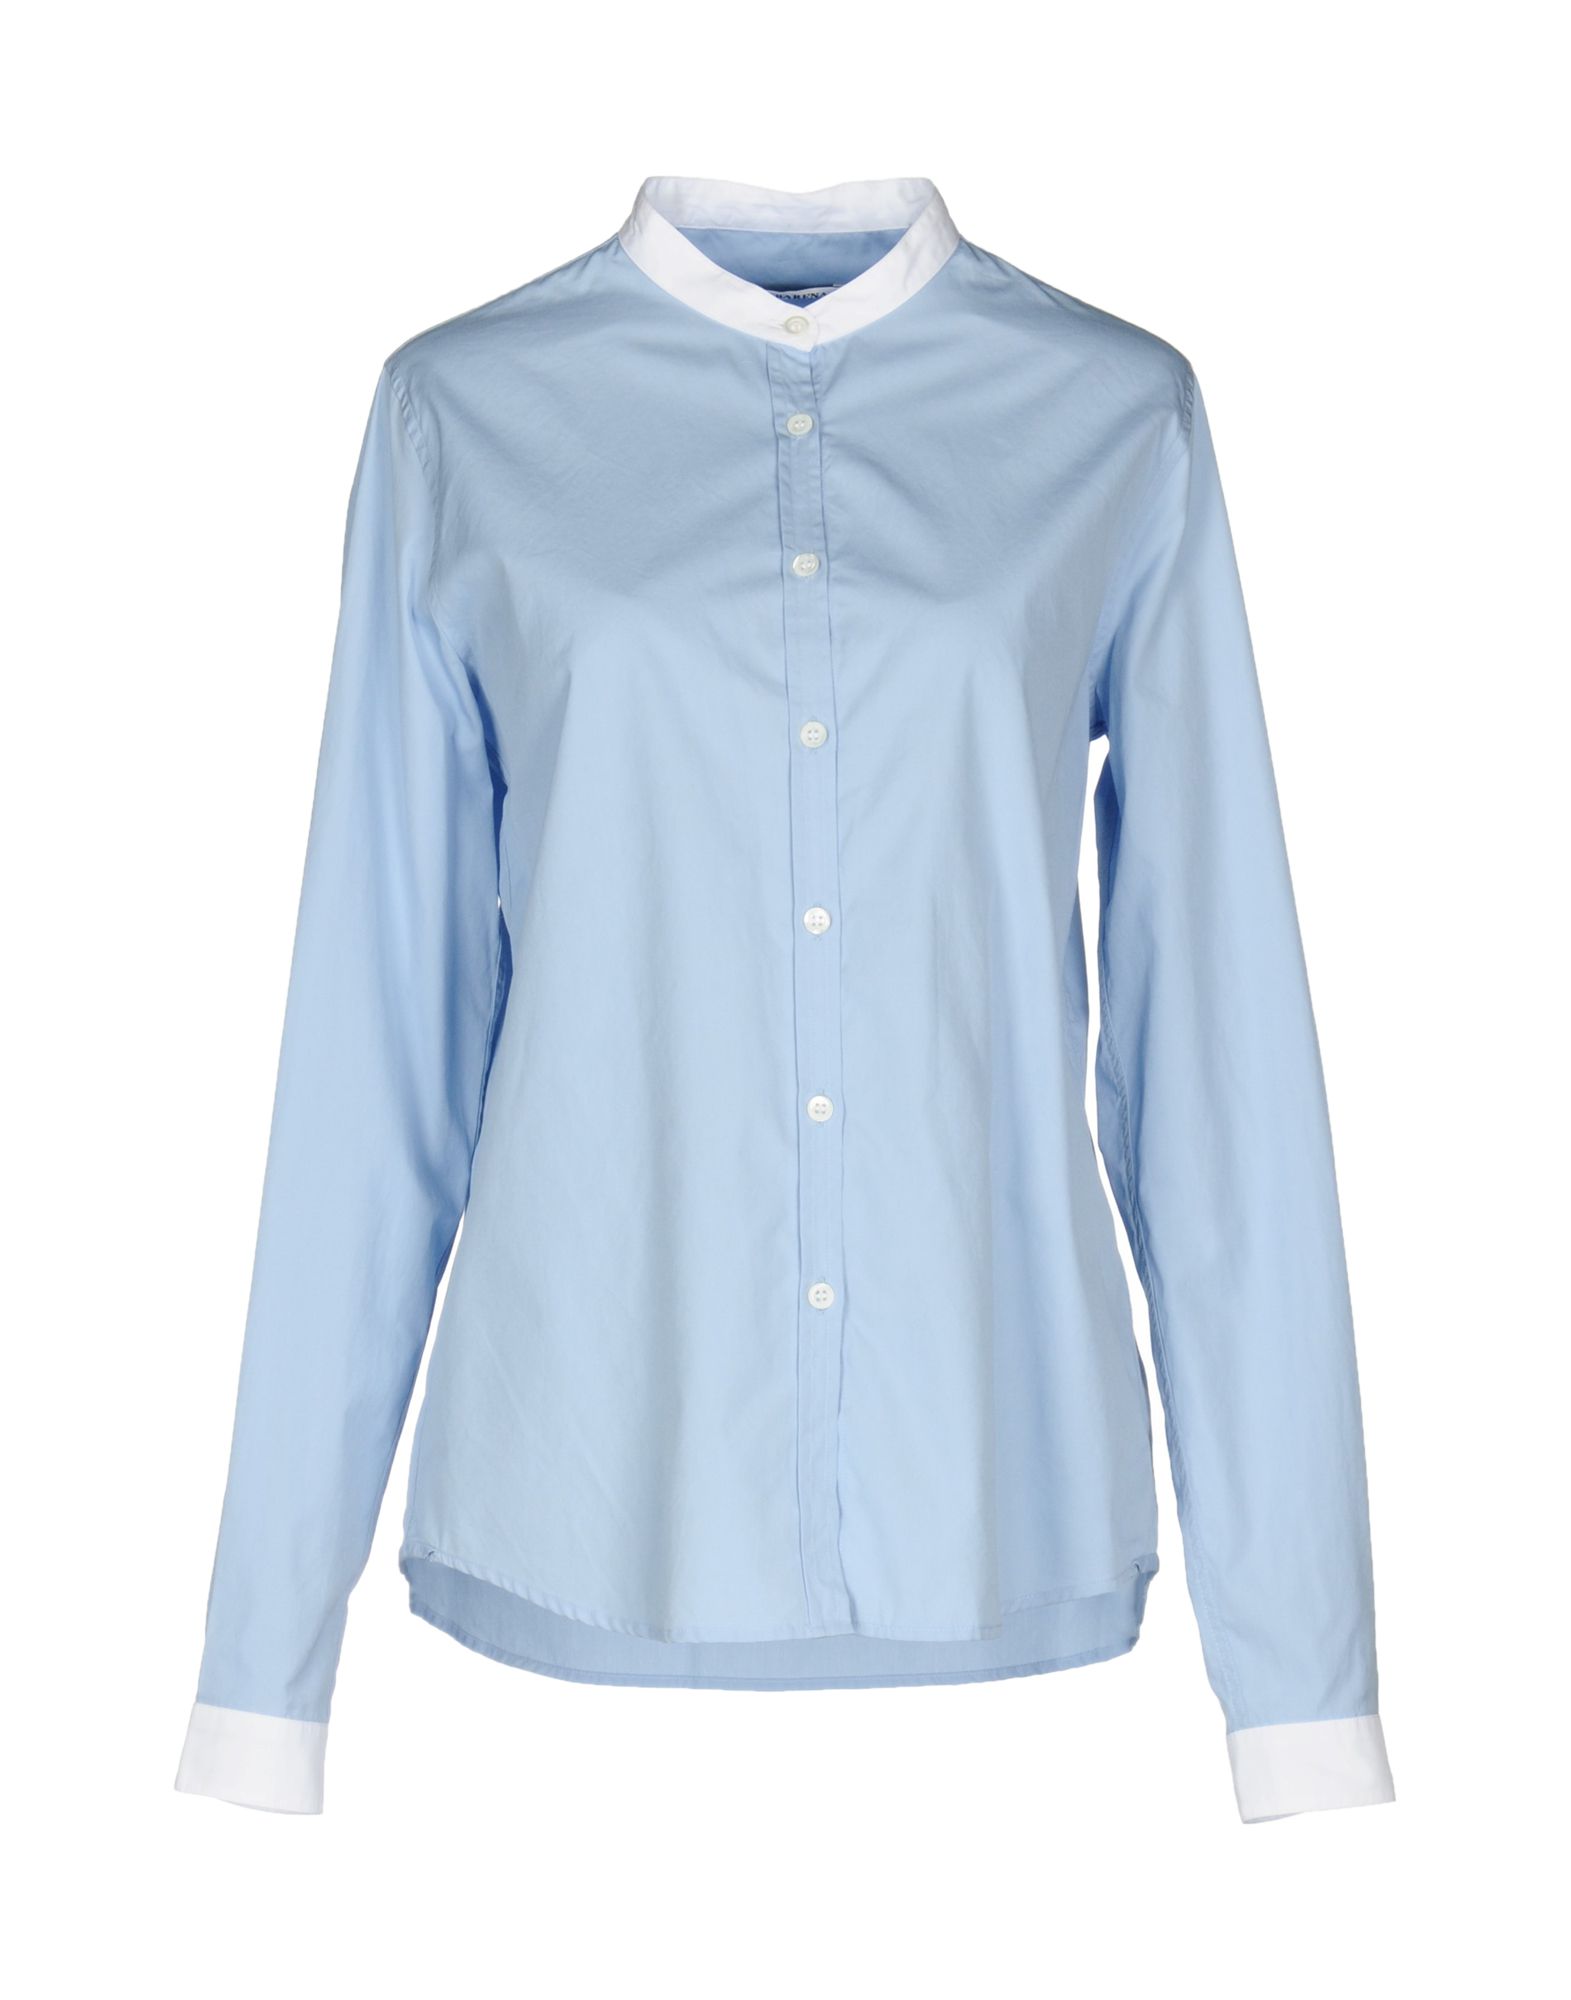 BARENA VENEZIA Solid color shirts & blouses,38688499KA 4